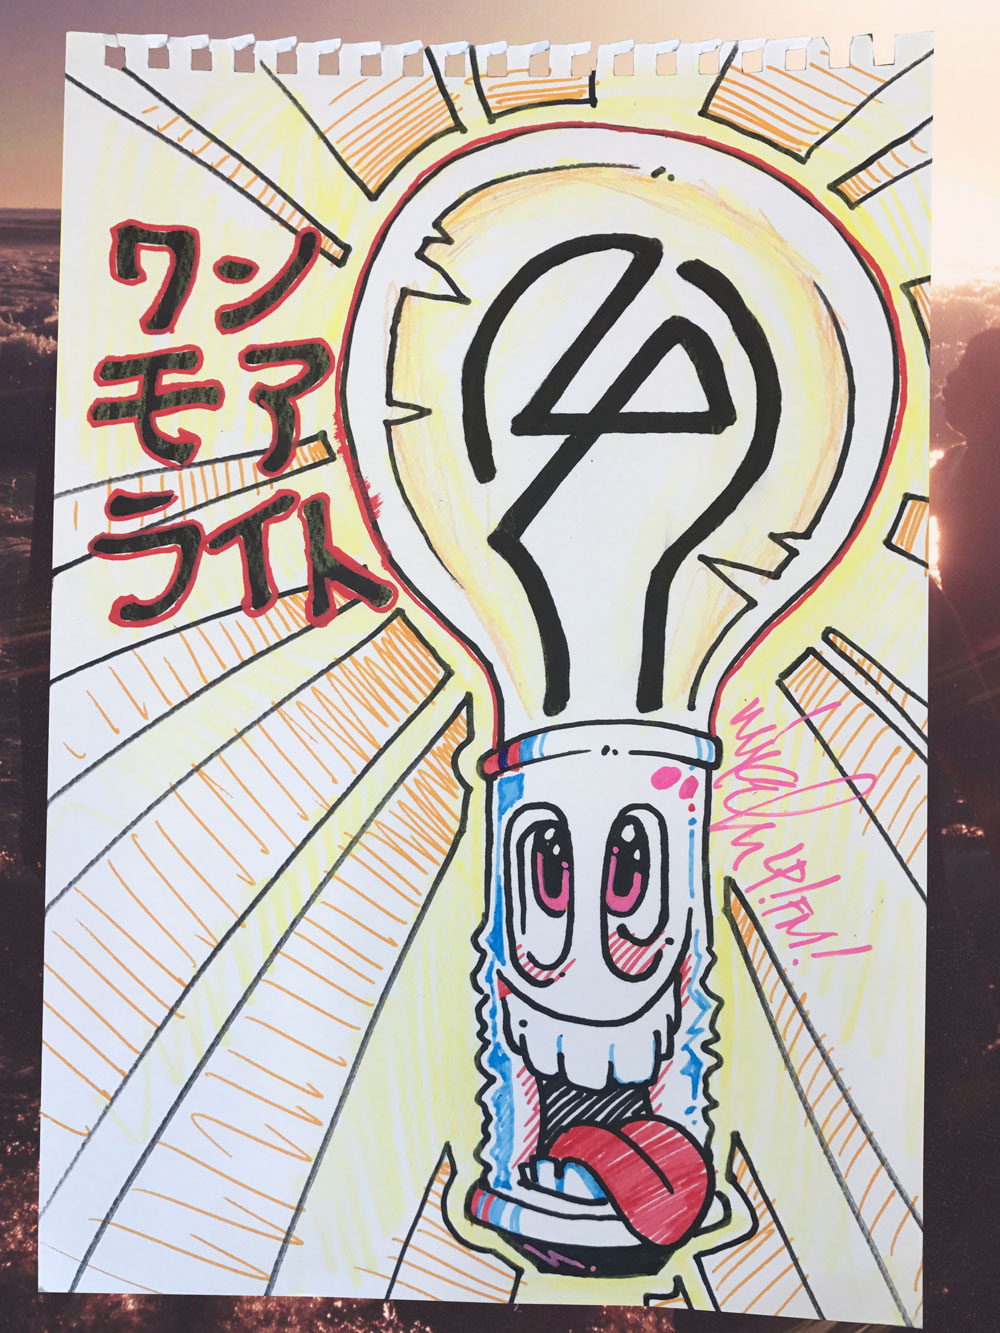 リンキン パークが カタカナ を使ったロゴデザインに挑戦 動画を公開 Moshi Moshi Nippon もしもしにっぽん